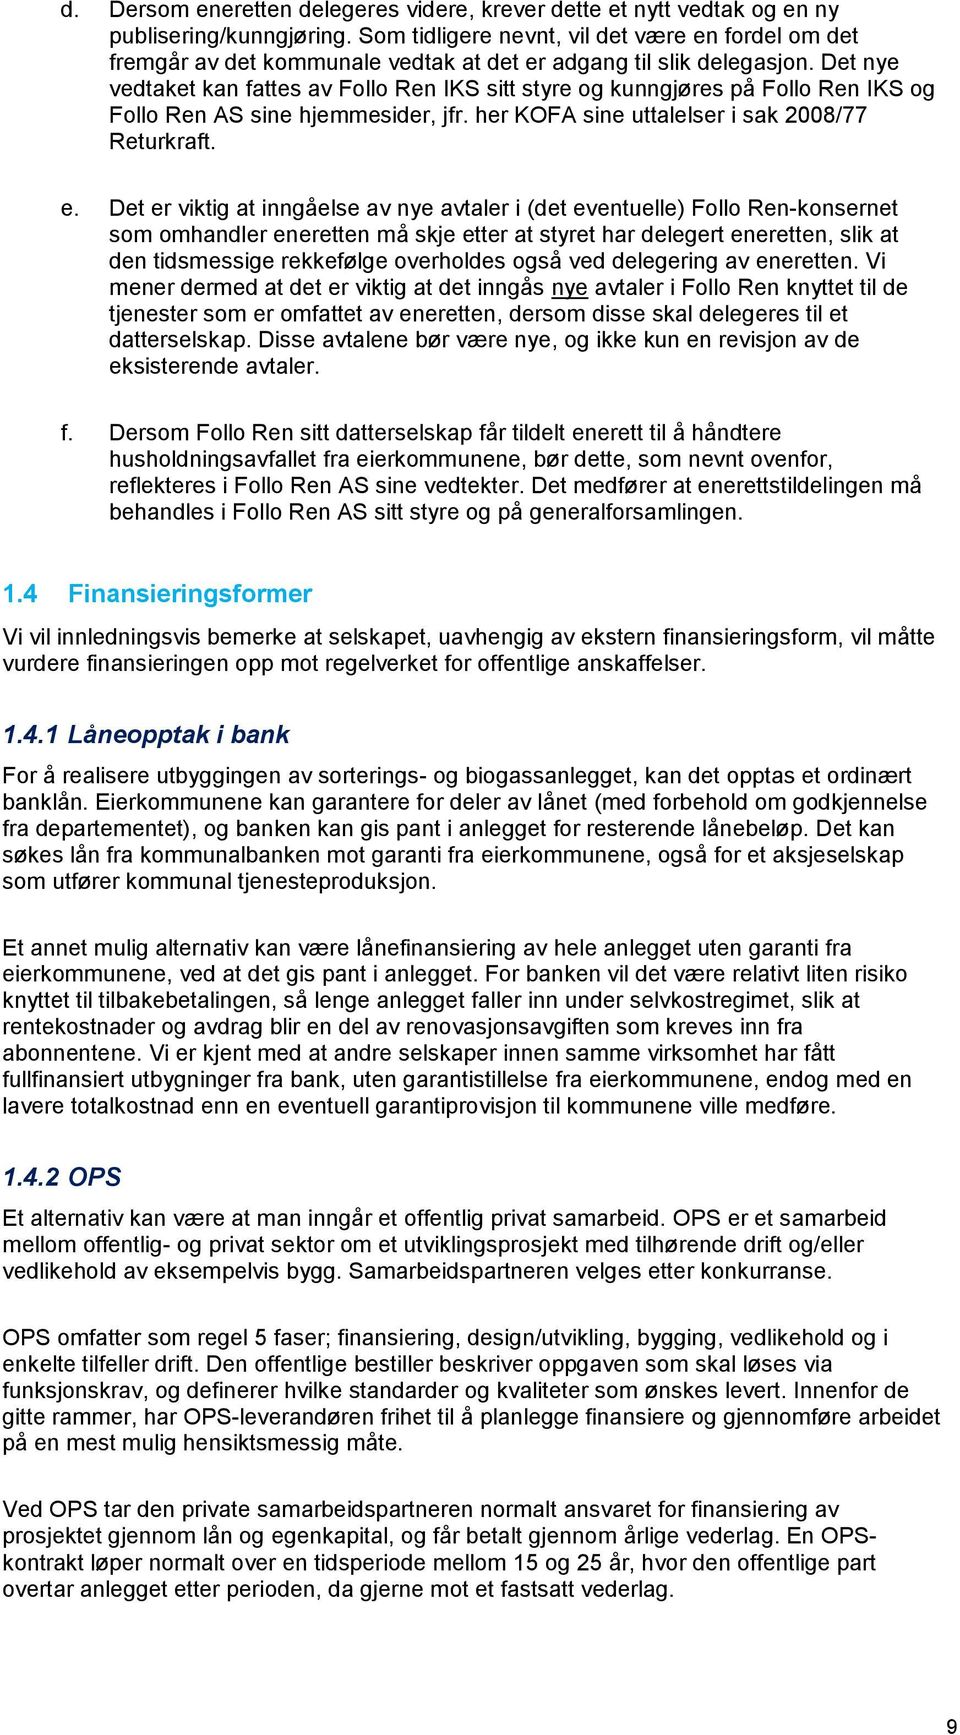 Det nye vedtaket kan fattes av Follo Ren IKS sitt styre og kunngjøres på Follo Ren IKS og Follo Ren AS sine hjemmesider, jfr. her KOFA sine uttalelser i sak 2008/77 Returkraft. e.